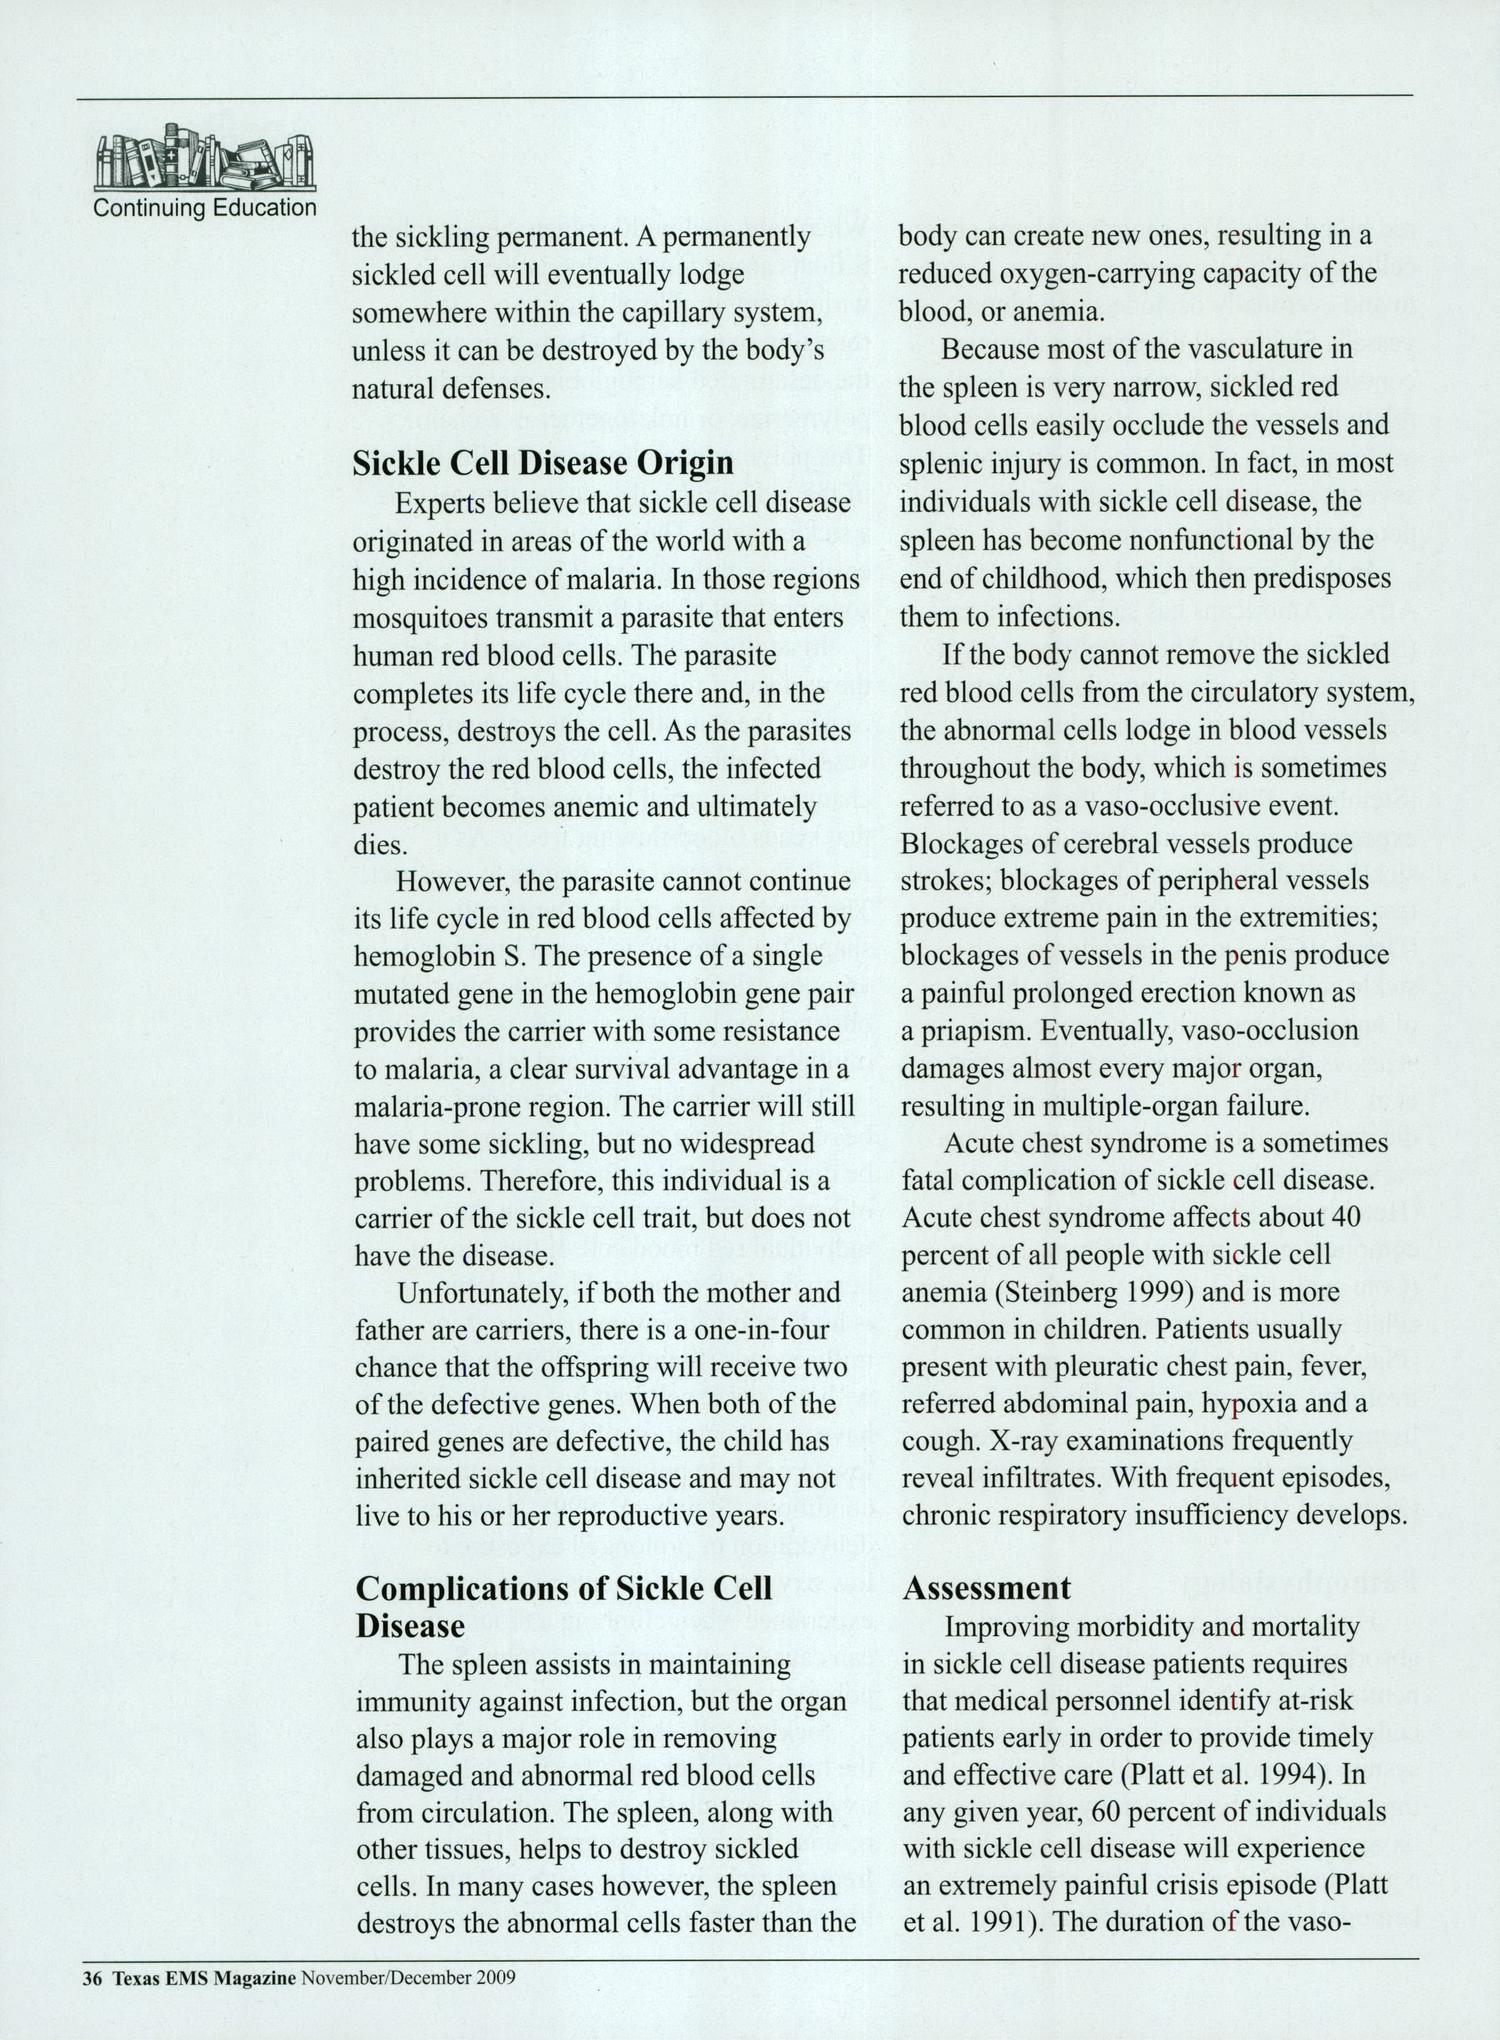 Texas EMS Magazine, Volume 30, Number 6, November/December 2009
                                                
                                                    36
                                                